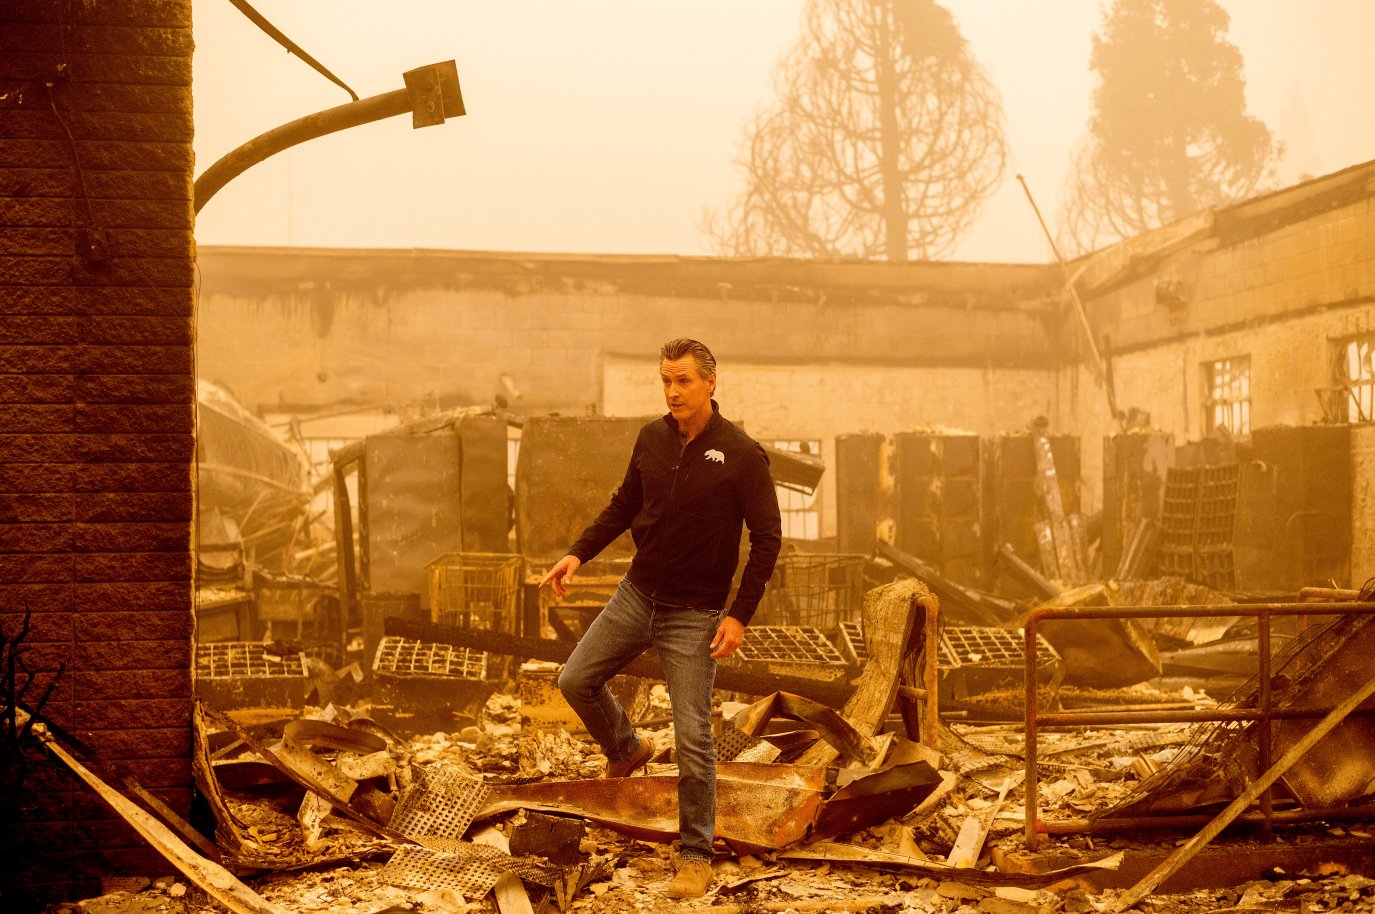 Пожар в дикси. Пожар Дикси. Пожар Дикси в Калифорнии. Пожар в Калифорнии уничтожил Грув. Пожар Дикси 50030.